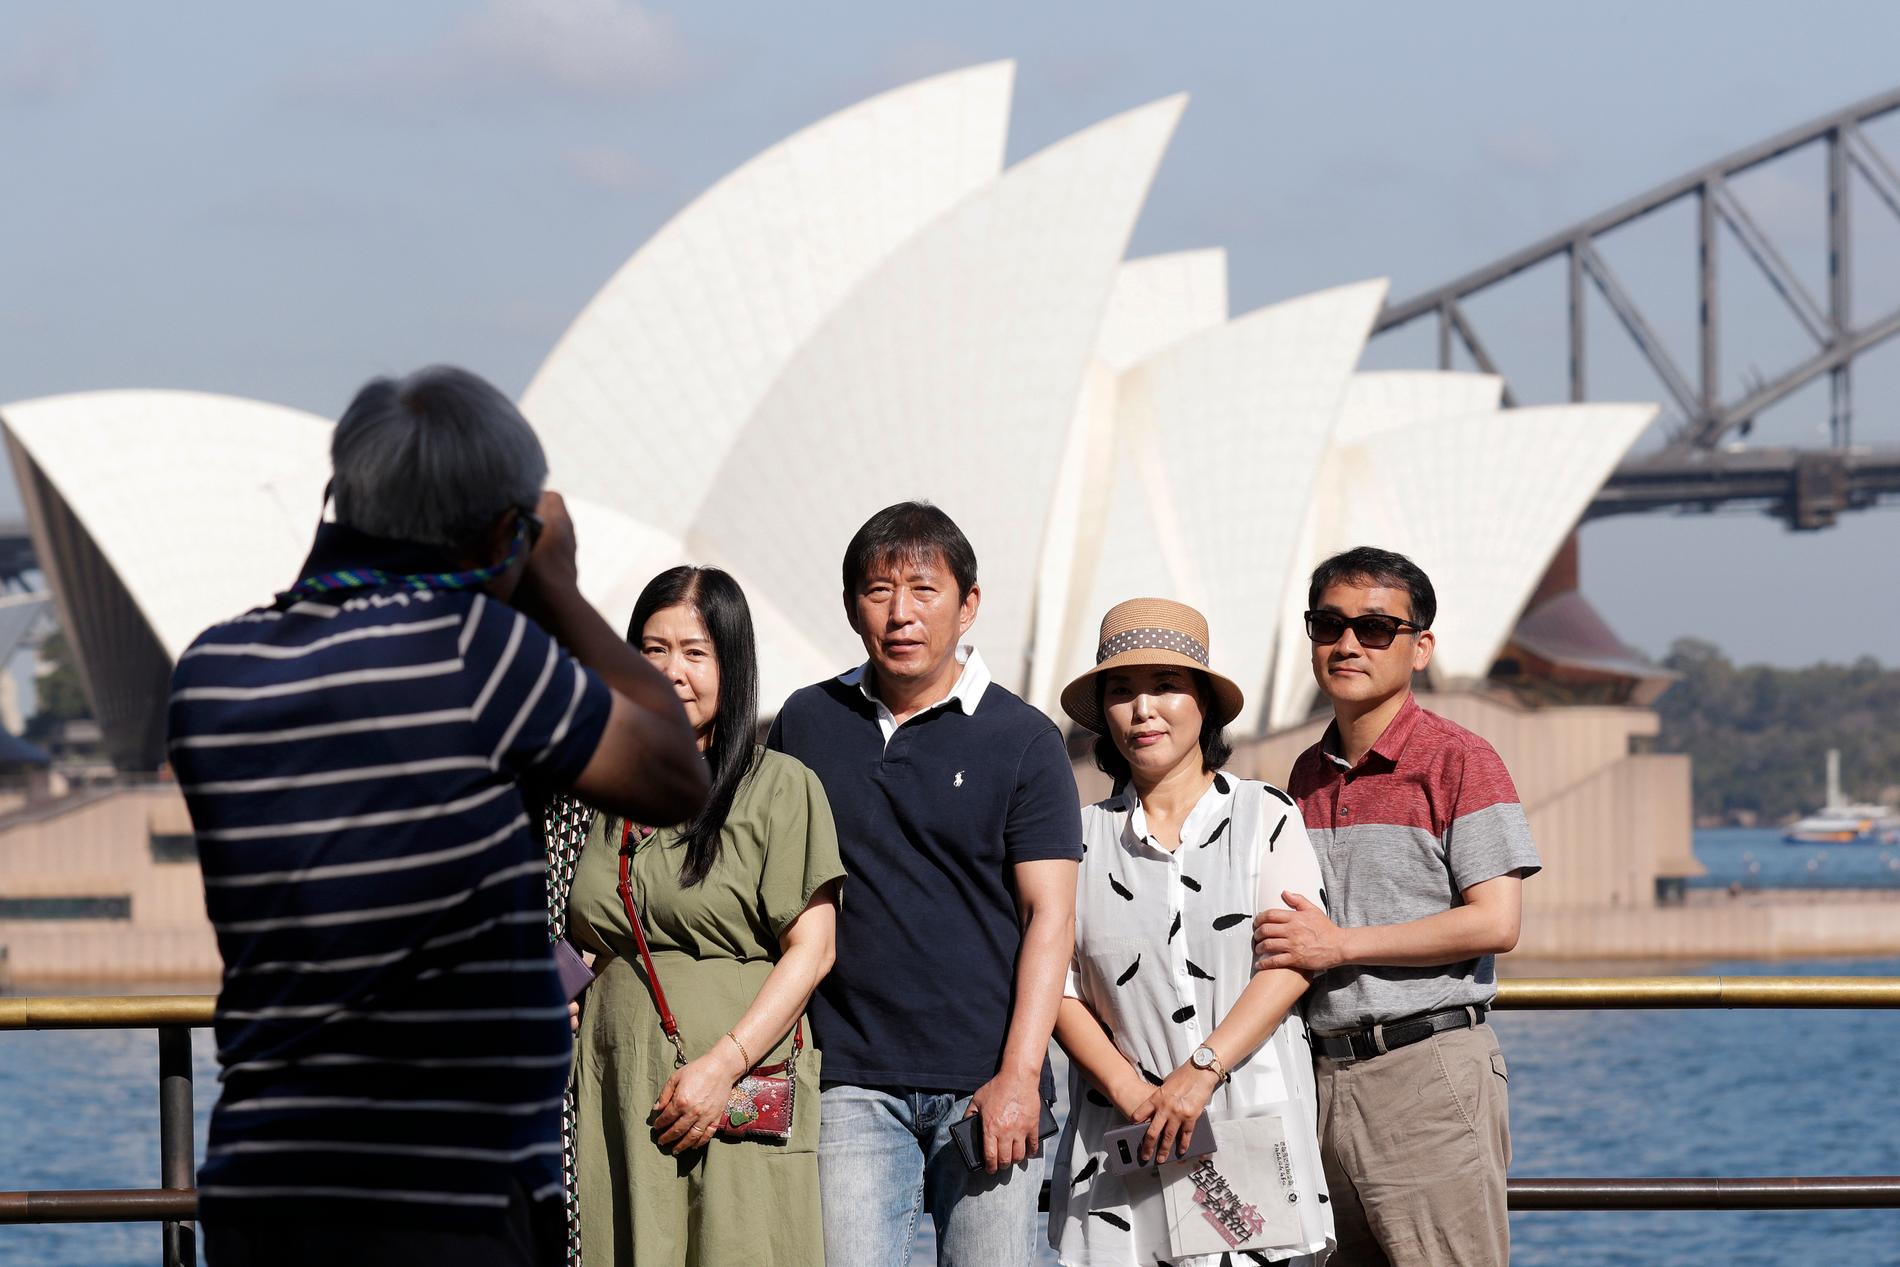 Turister låter fotografera sig framför Sydneys berömda operahus, i januari 2020, innan Australiens gränser stängdes. Internationella turister kommer troligen inte att kunna besöka landet förrän tidigast i mitten av 2022.